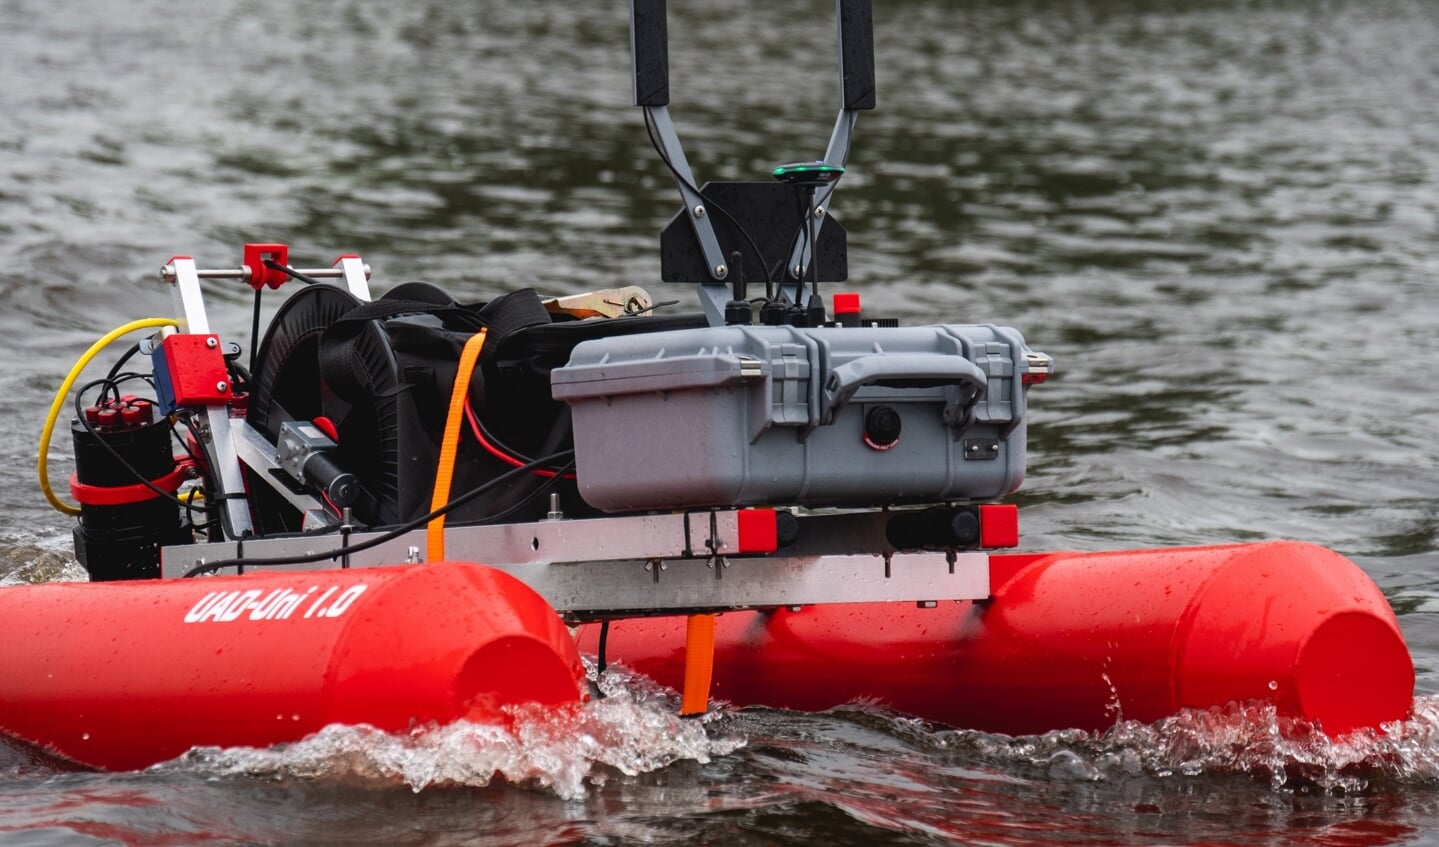 De 'waterdrone' of 'universal aquatic drone' kan op afstand de boezemwaterkwaliteit meten.